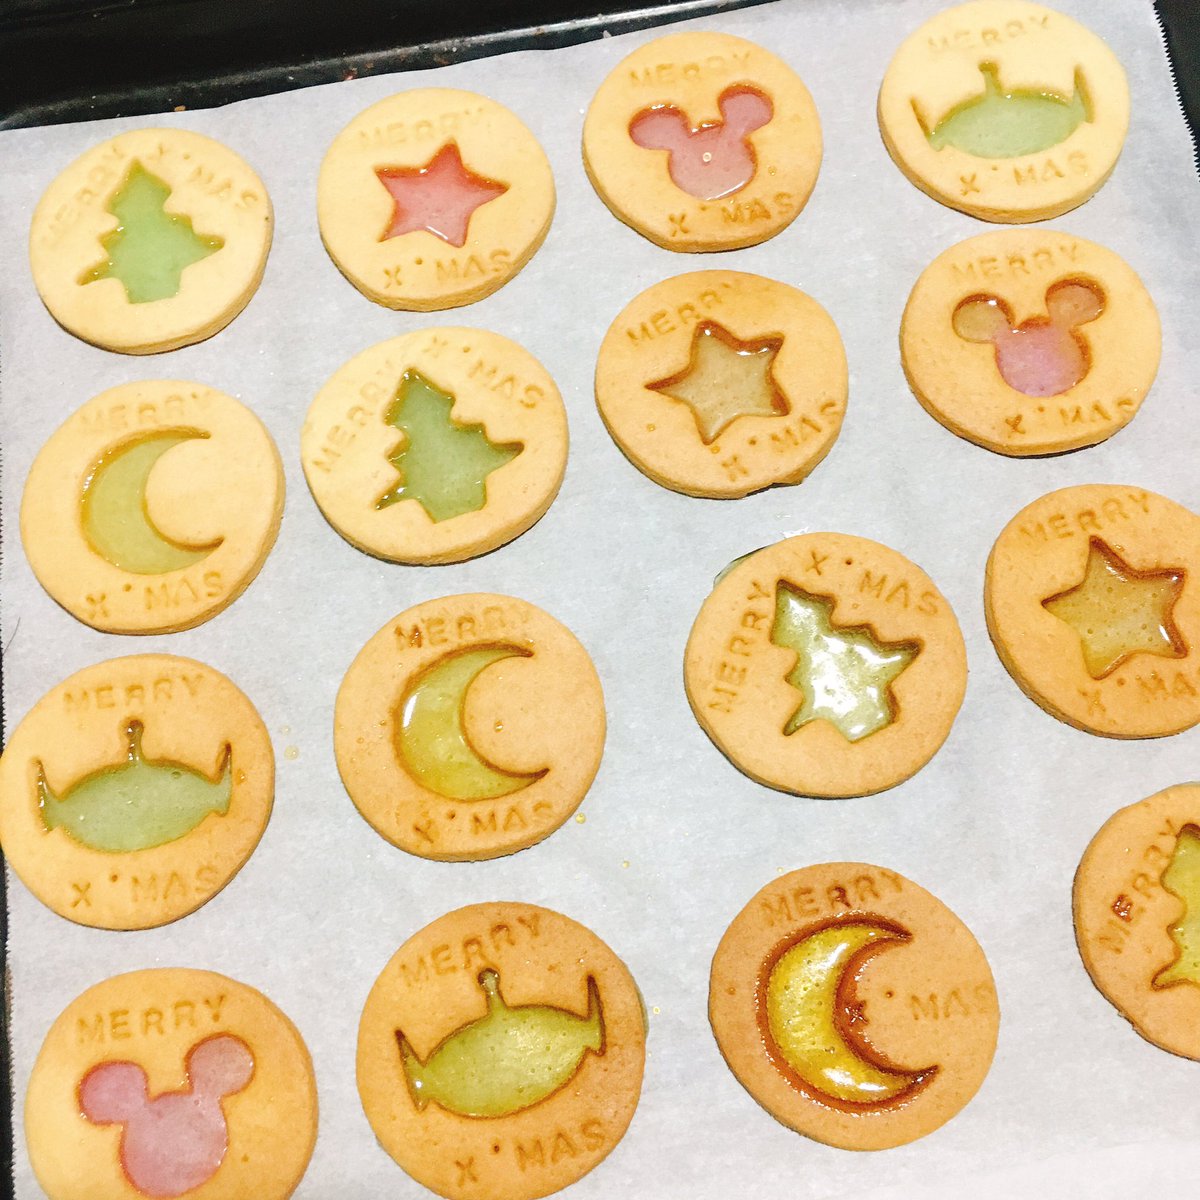 Nao Na Twitteri クリスマスのステンドグラスクッキー 飴の溶ける具合見てやるの難しい ちょっと失敗しちゃったけどまあ 初めてにしては悪くない 可愛いから味は気にしない ちなみにクリスマスツリーの型は手作り いろいろ失敗したけど笑 お菓子作り お